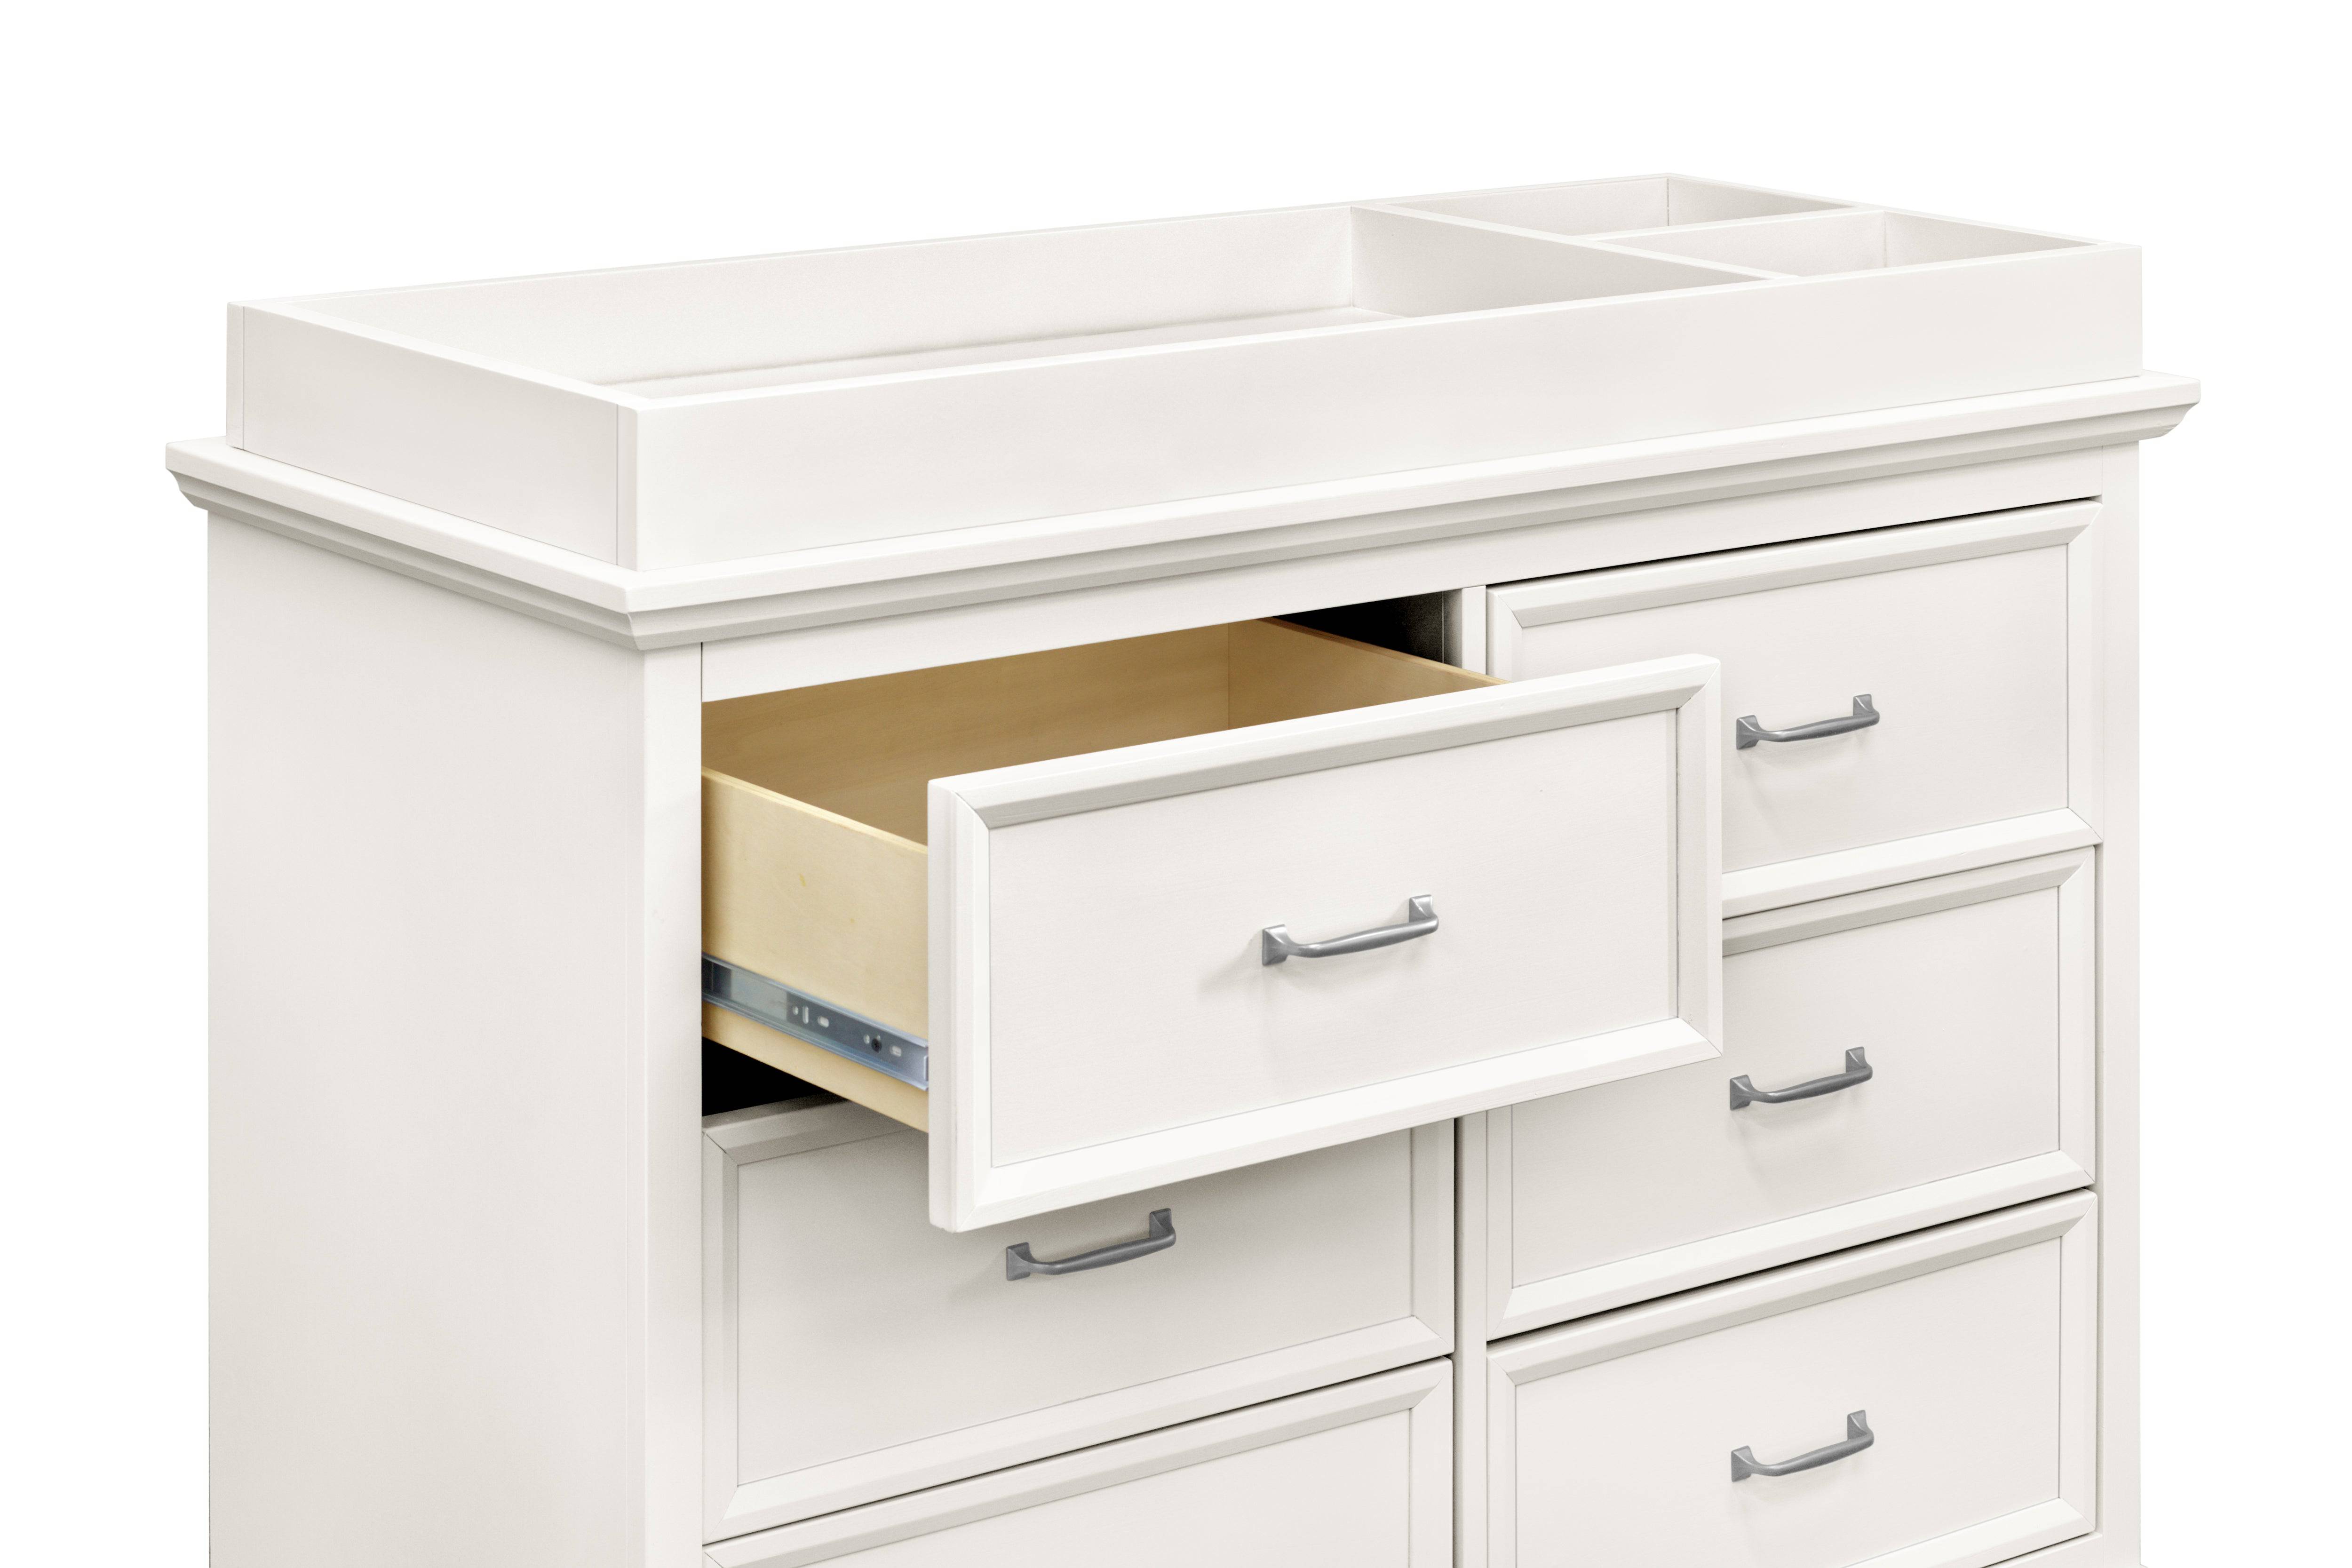 Foothill-Louis 6 Drawer Dresser in Warm White - Twinkle Twinkle Little One